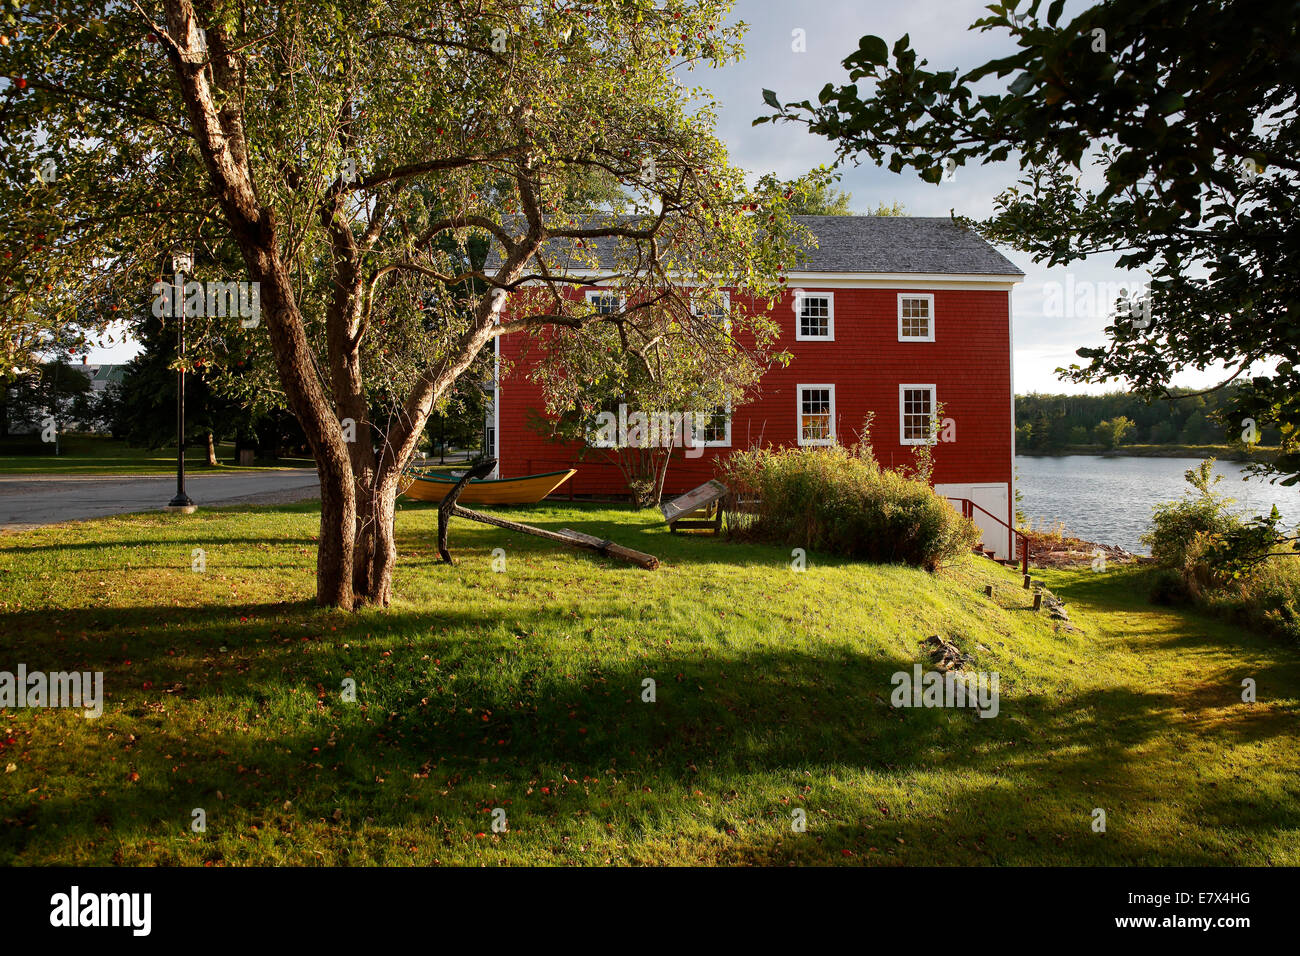 Village de Sherbrooke, Sherbrooke, Nova Scotia Canada Banque D'Images